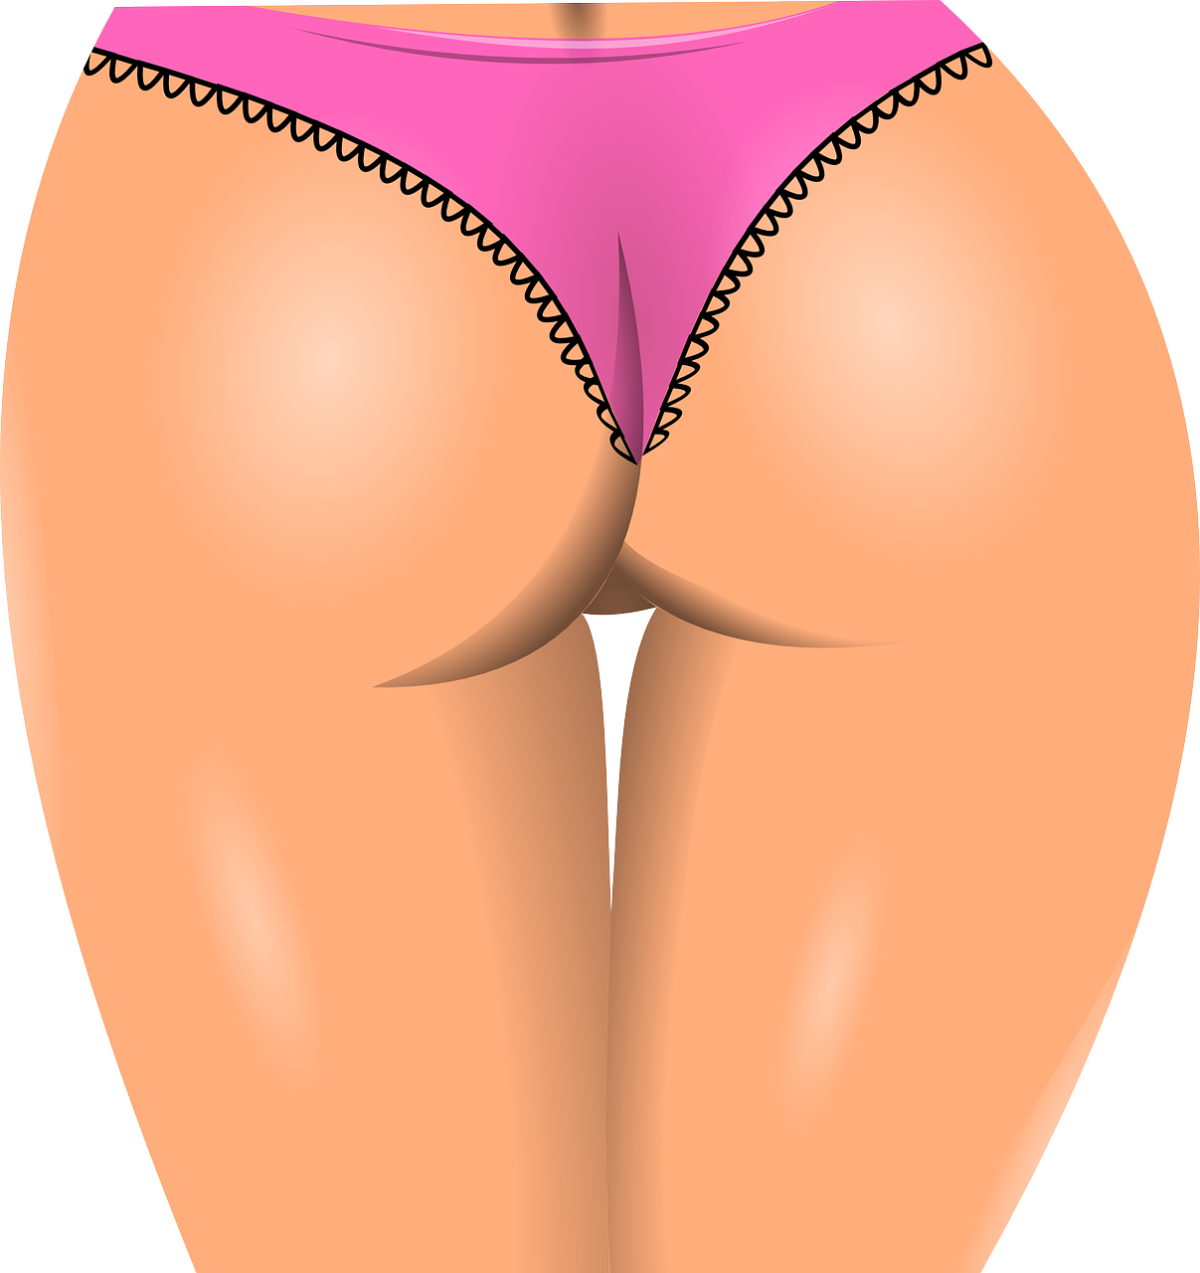 Pragnienie akceptacji wyglądu warg sromowych są motywami konsultacji kobiet z ginekologiem lub chirurgiem plastycznym.